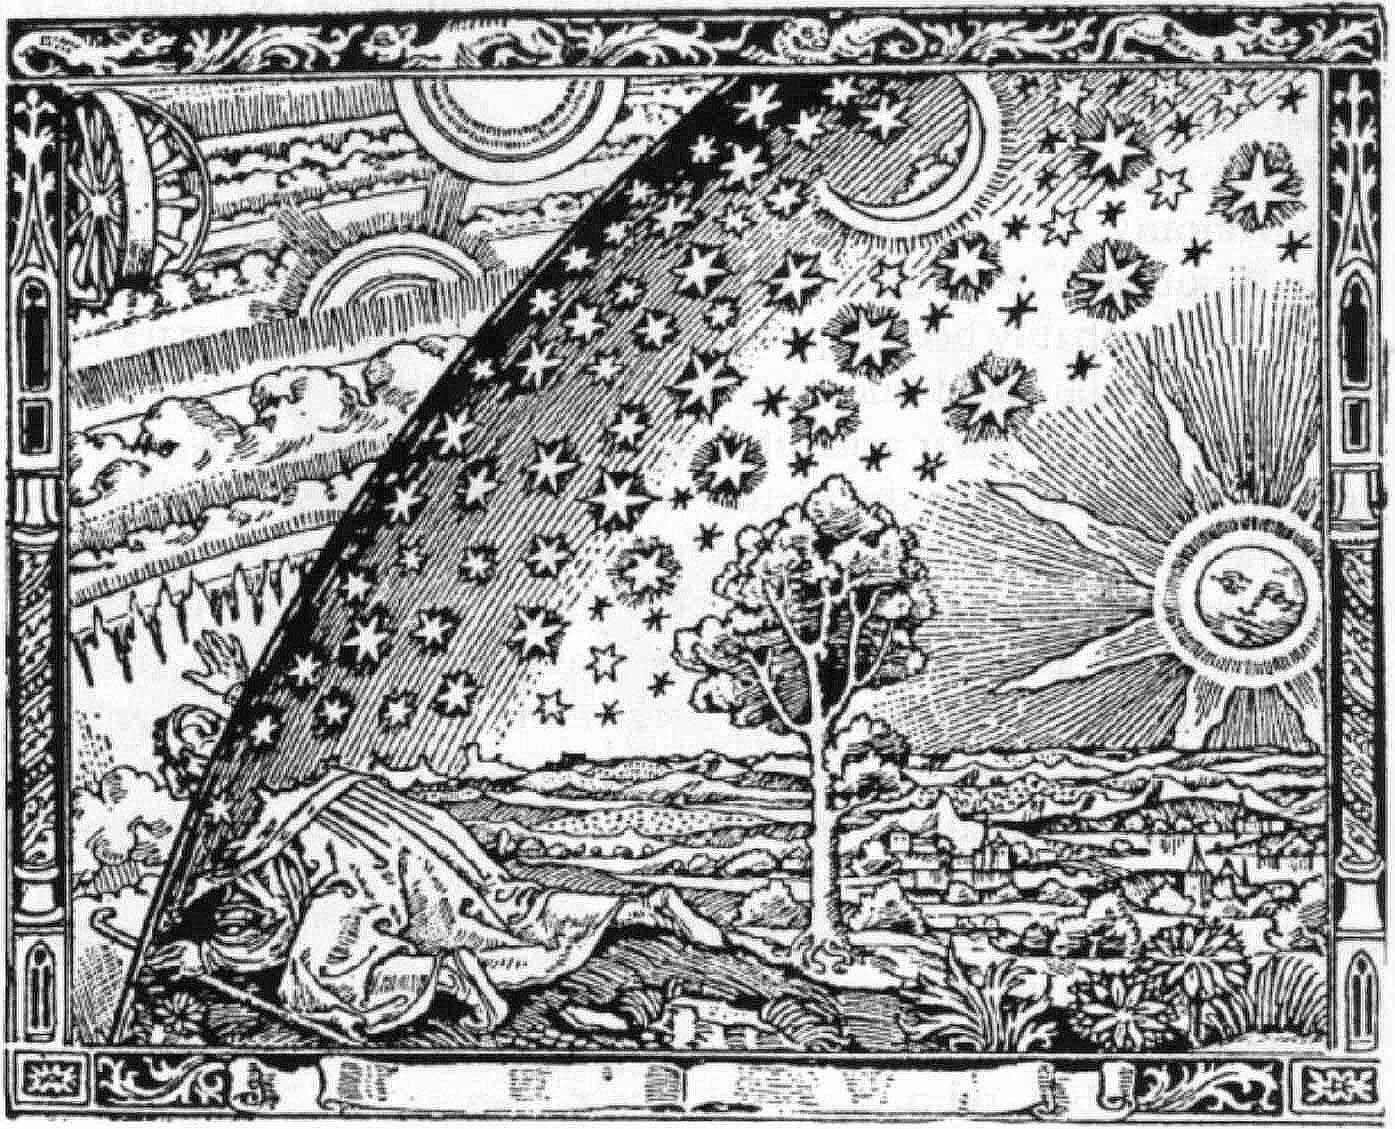 Holzstich des Flammarion